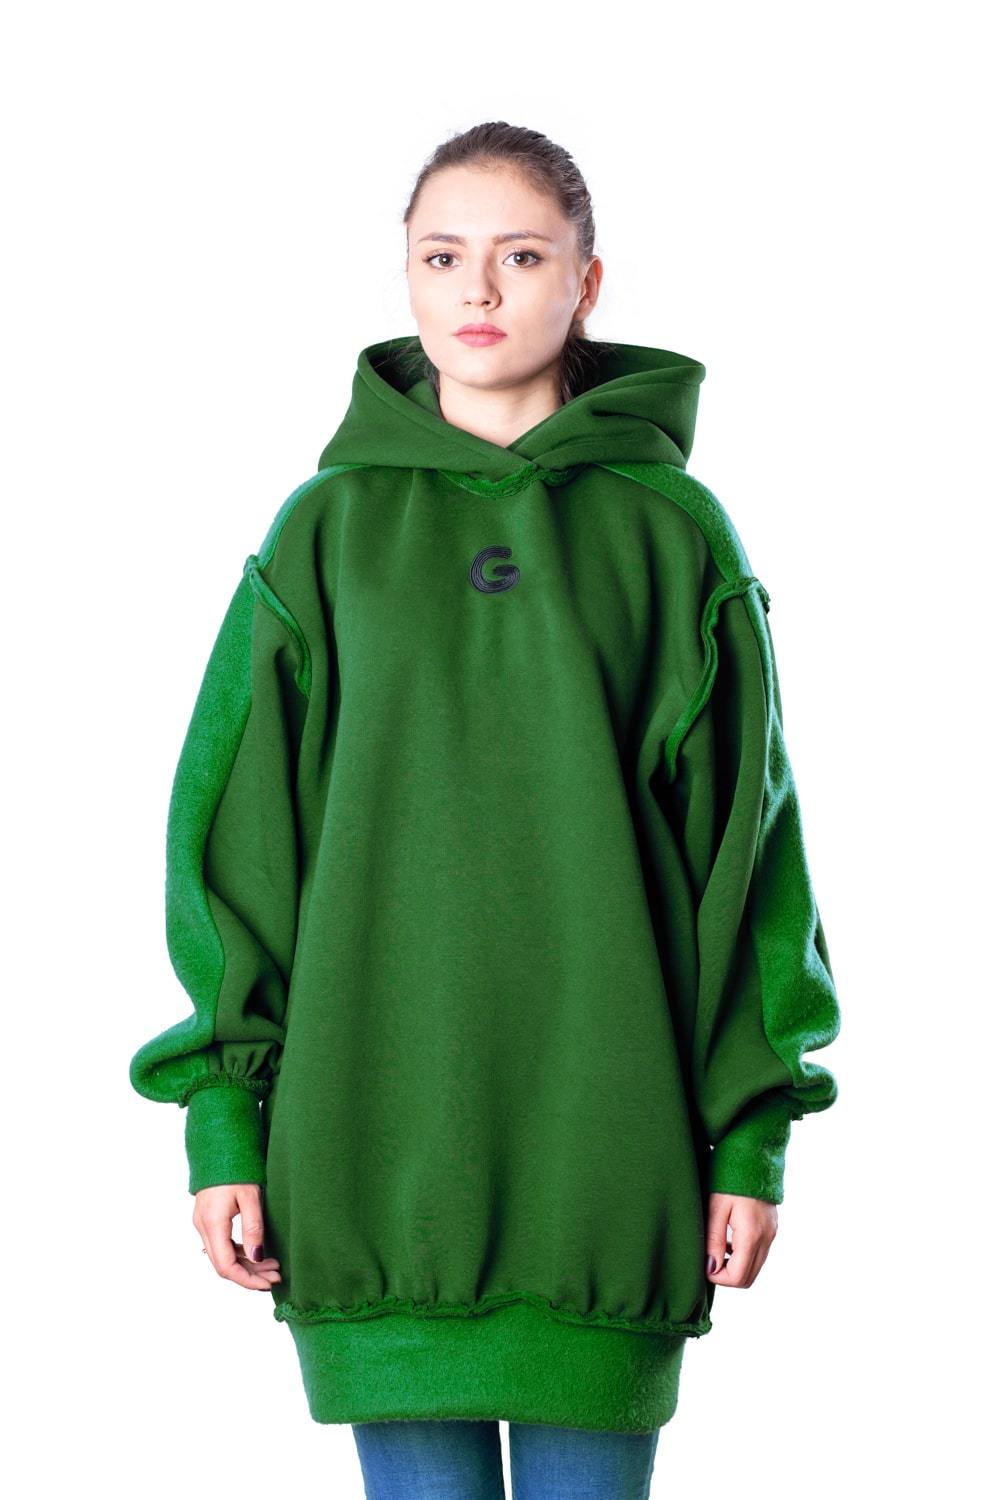 TheG Fresh Oversize Hoody Woman // green